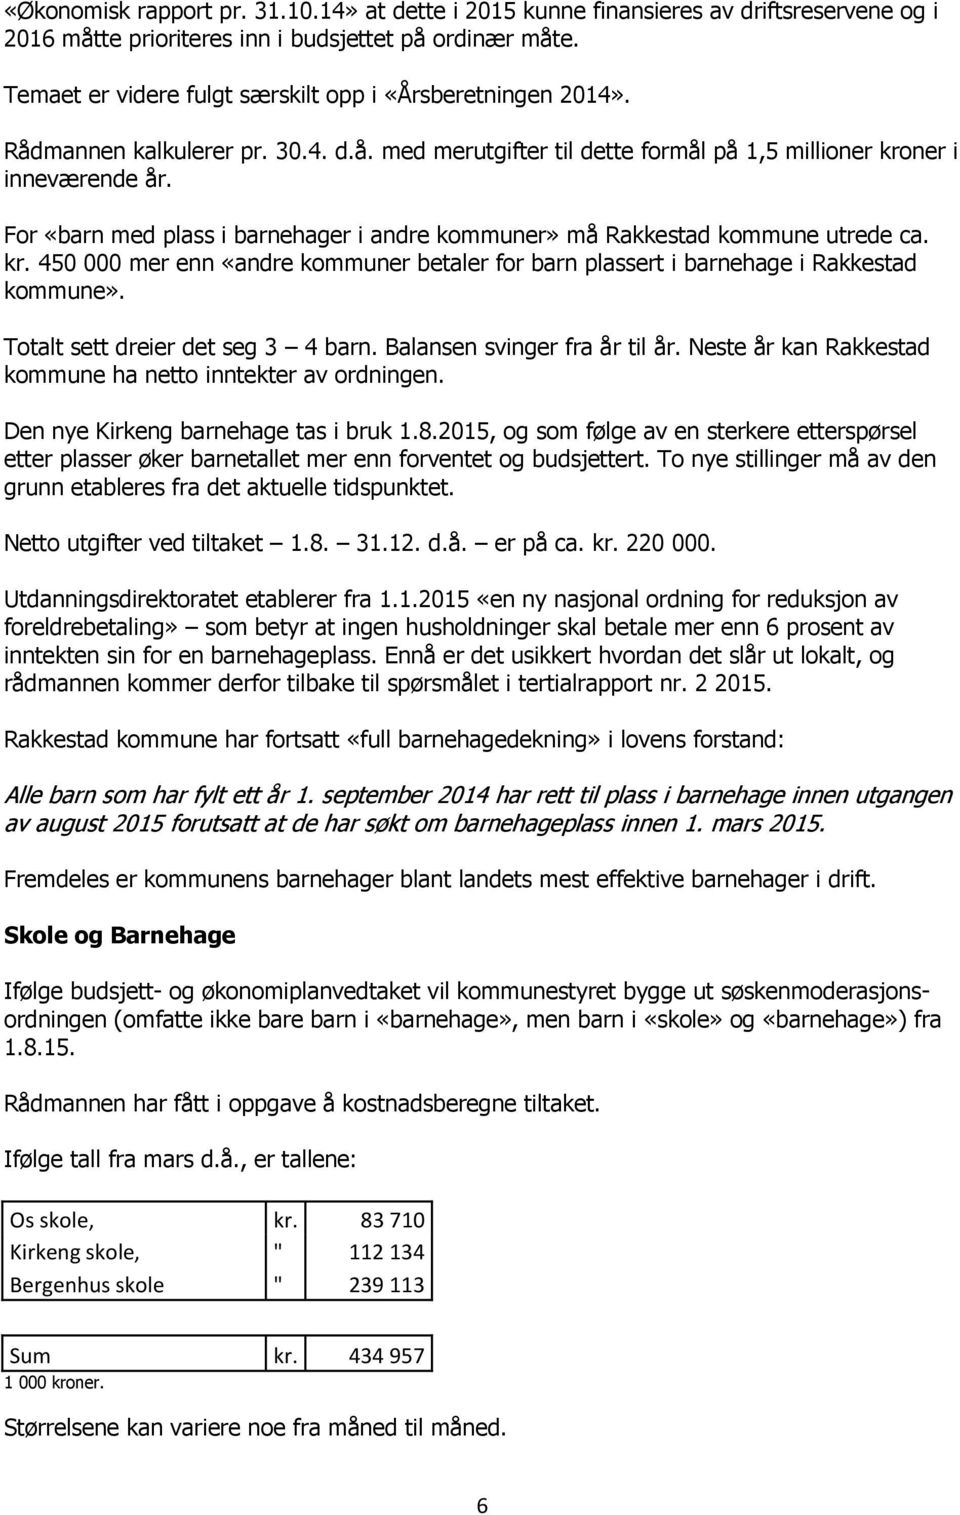 For «barn med plass i barnehager i andre kommuner» må Rakkestad kommune utrede ca. kr. 450 000 mer enn «andre kommuner betaler for barn plassert i barnehage i Rakkestad kommune».